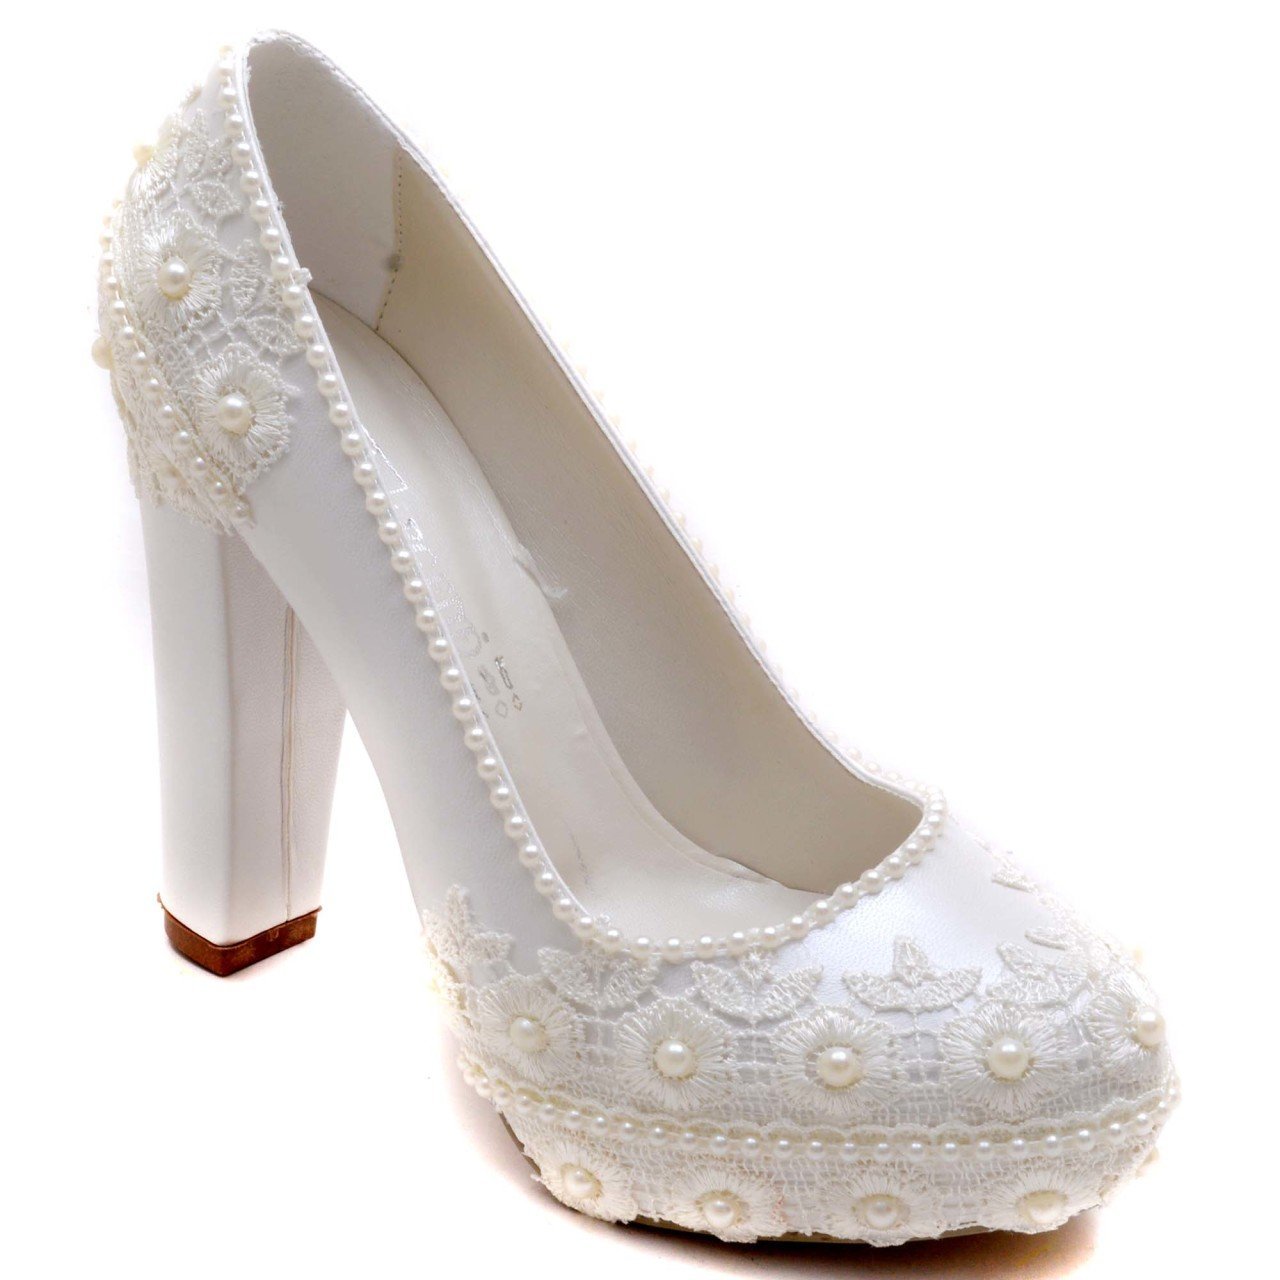 922-G Klasik Gelin Ayakkabısı - Beyaz